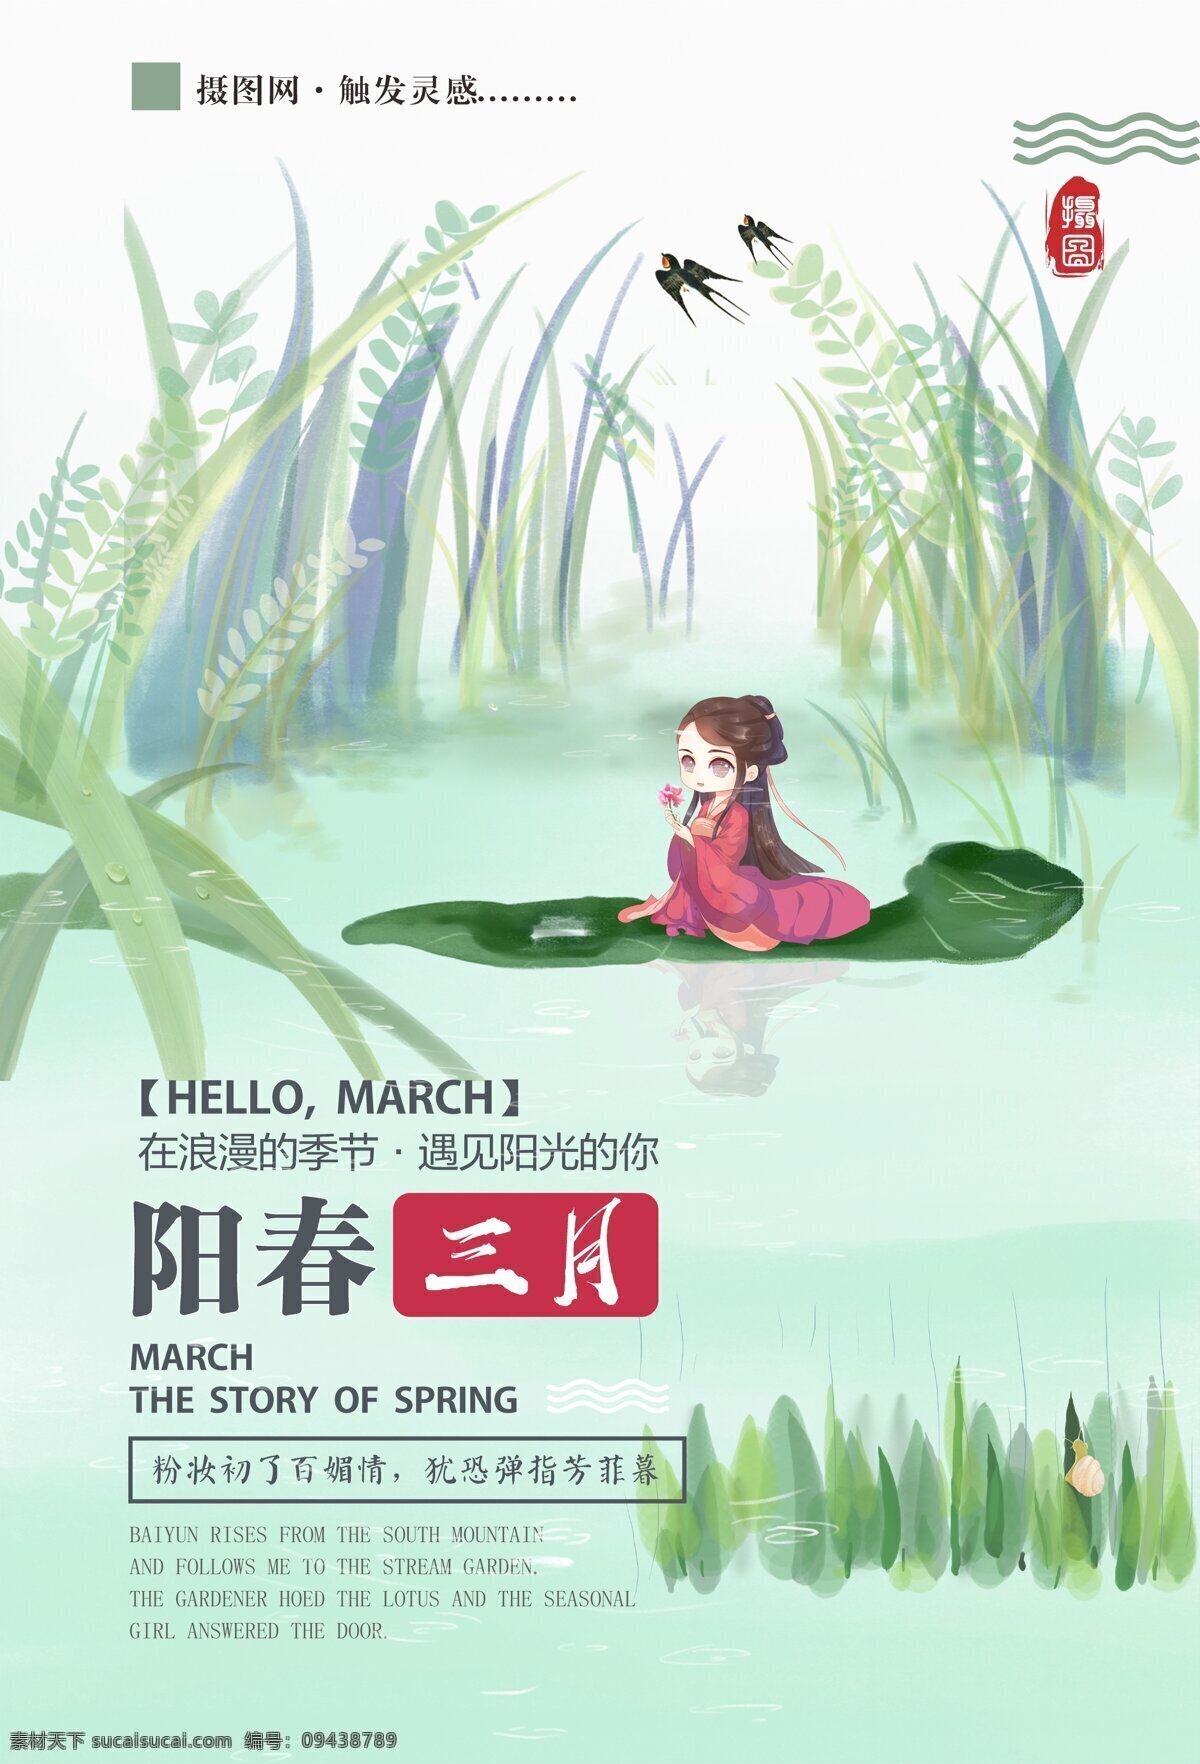 阳春 三月中 国风 海报 阳春三月 你好三月 中国风 卡通 节日海报 3月你好 春天 绿色 绿意盎然 你好3月 中国风海报